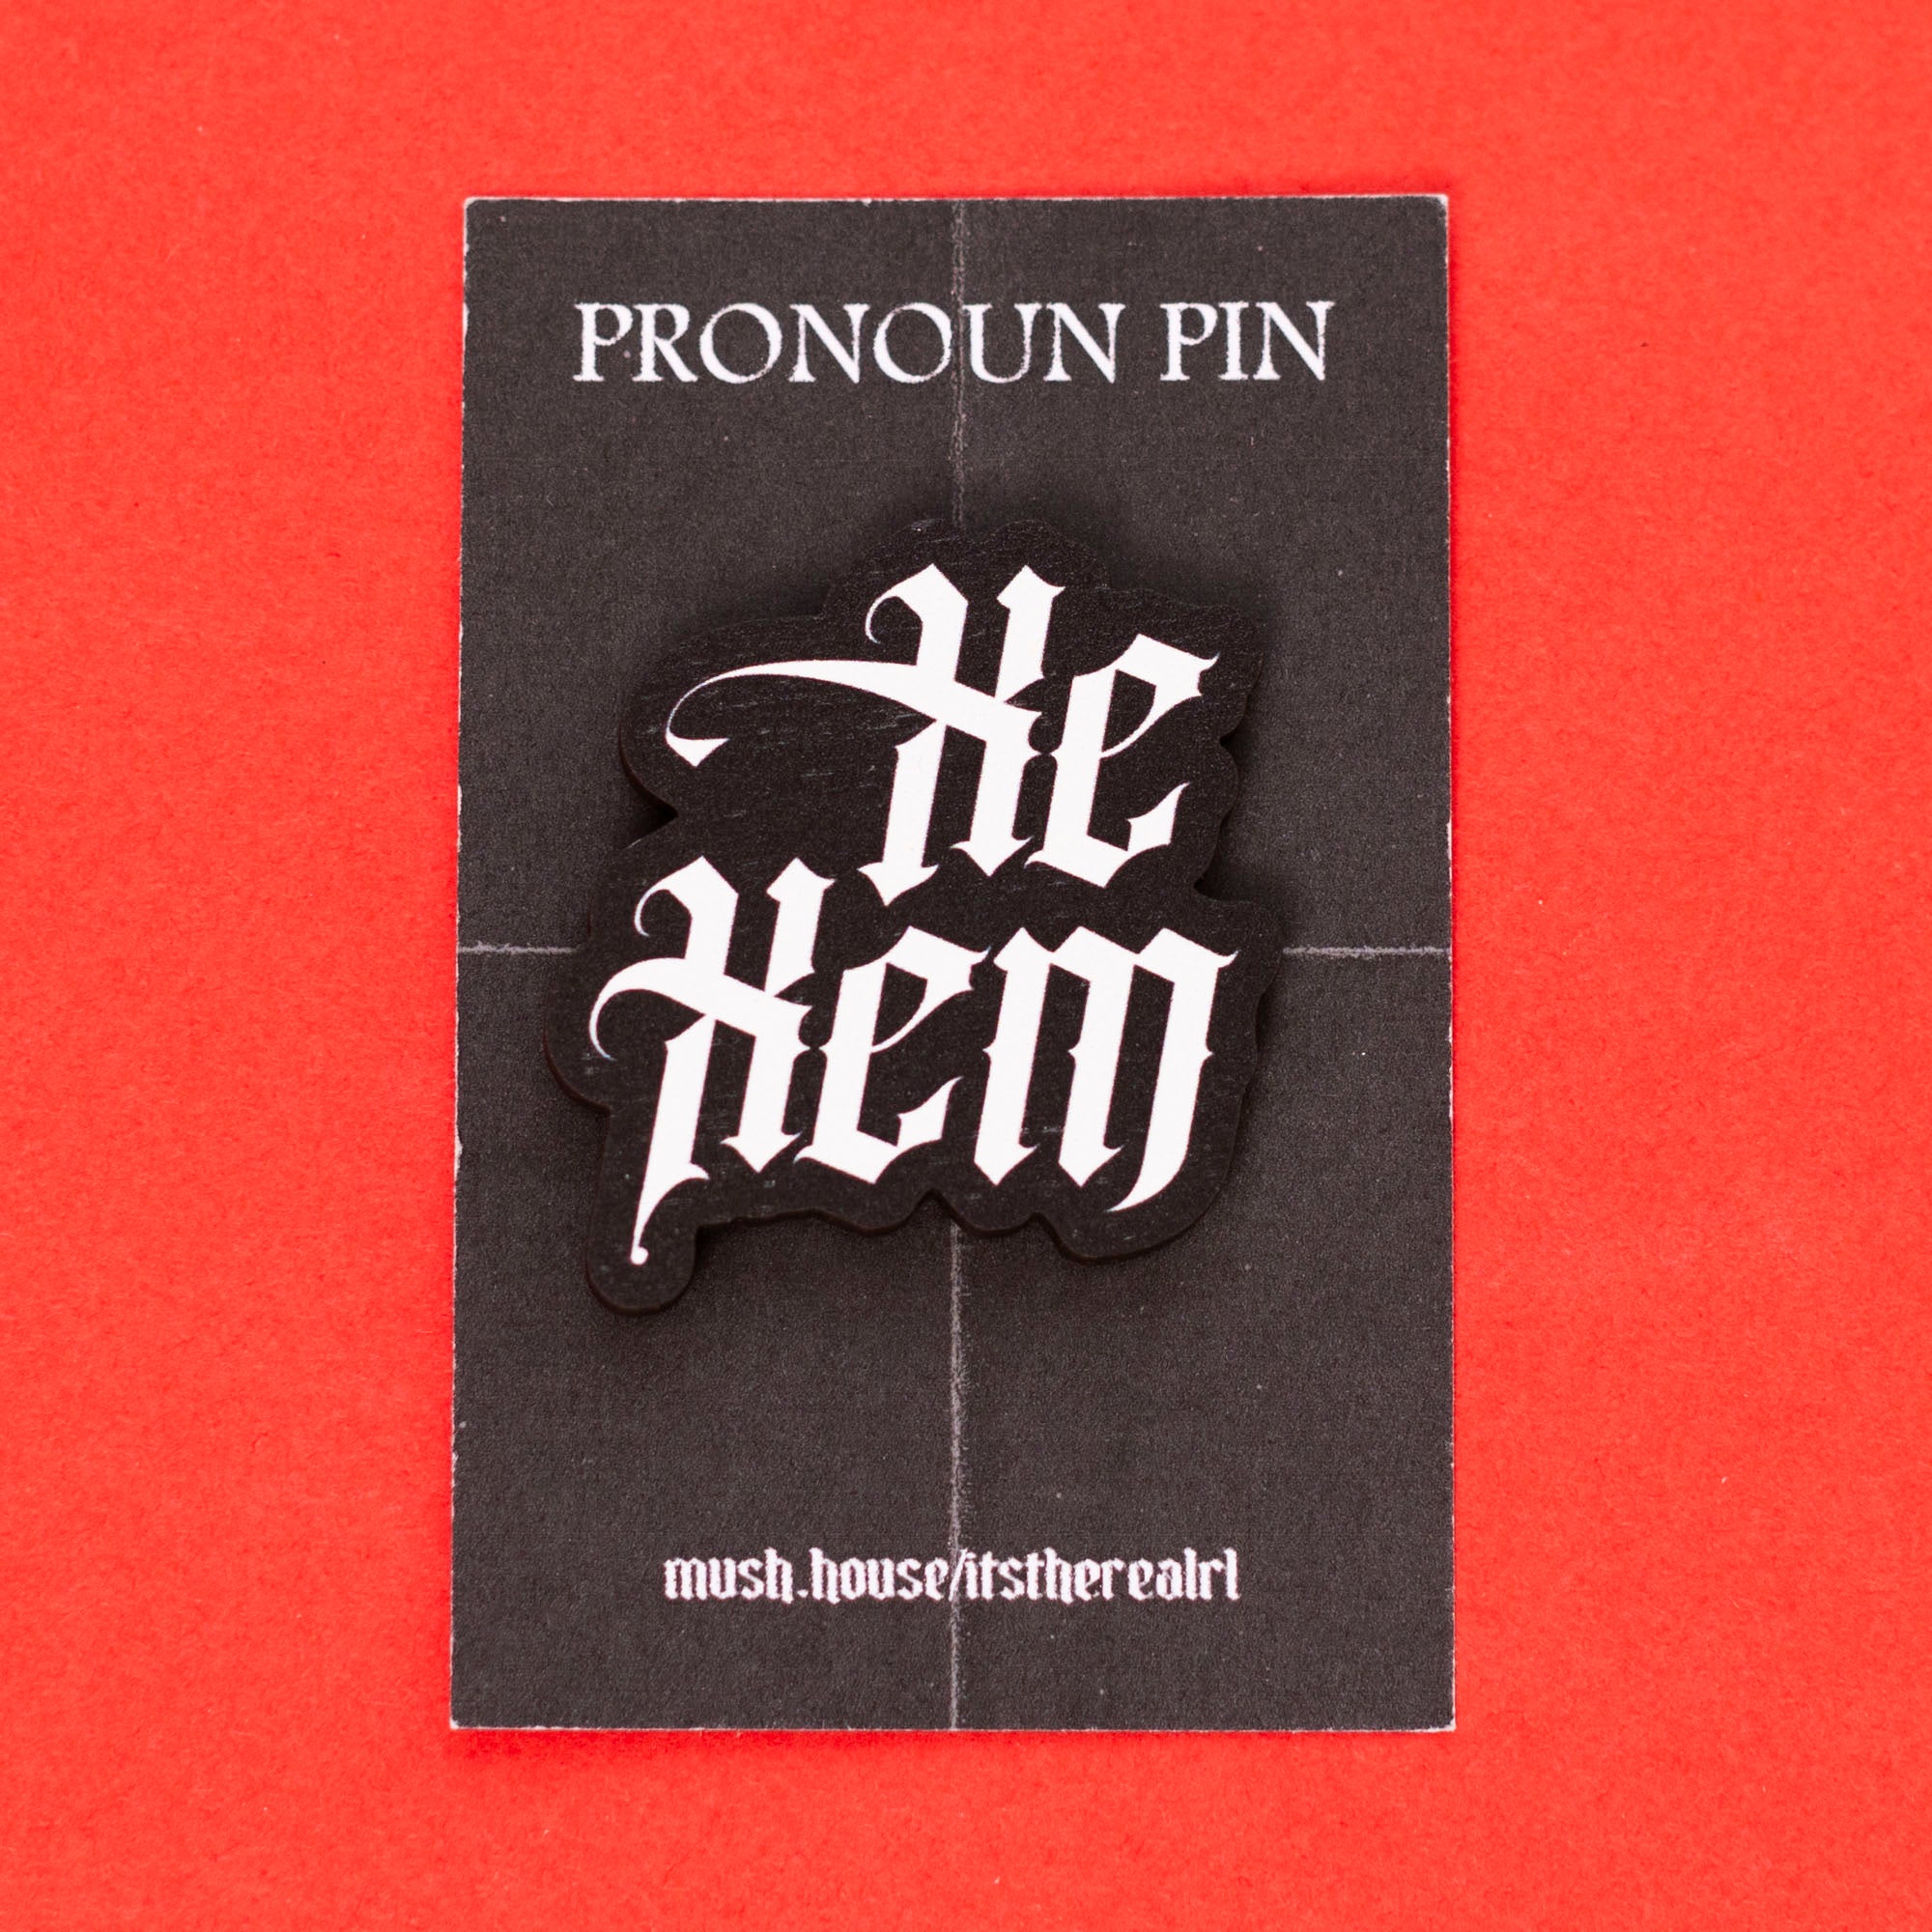 Xe / Xem Gothic Pronoun Pin